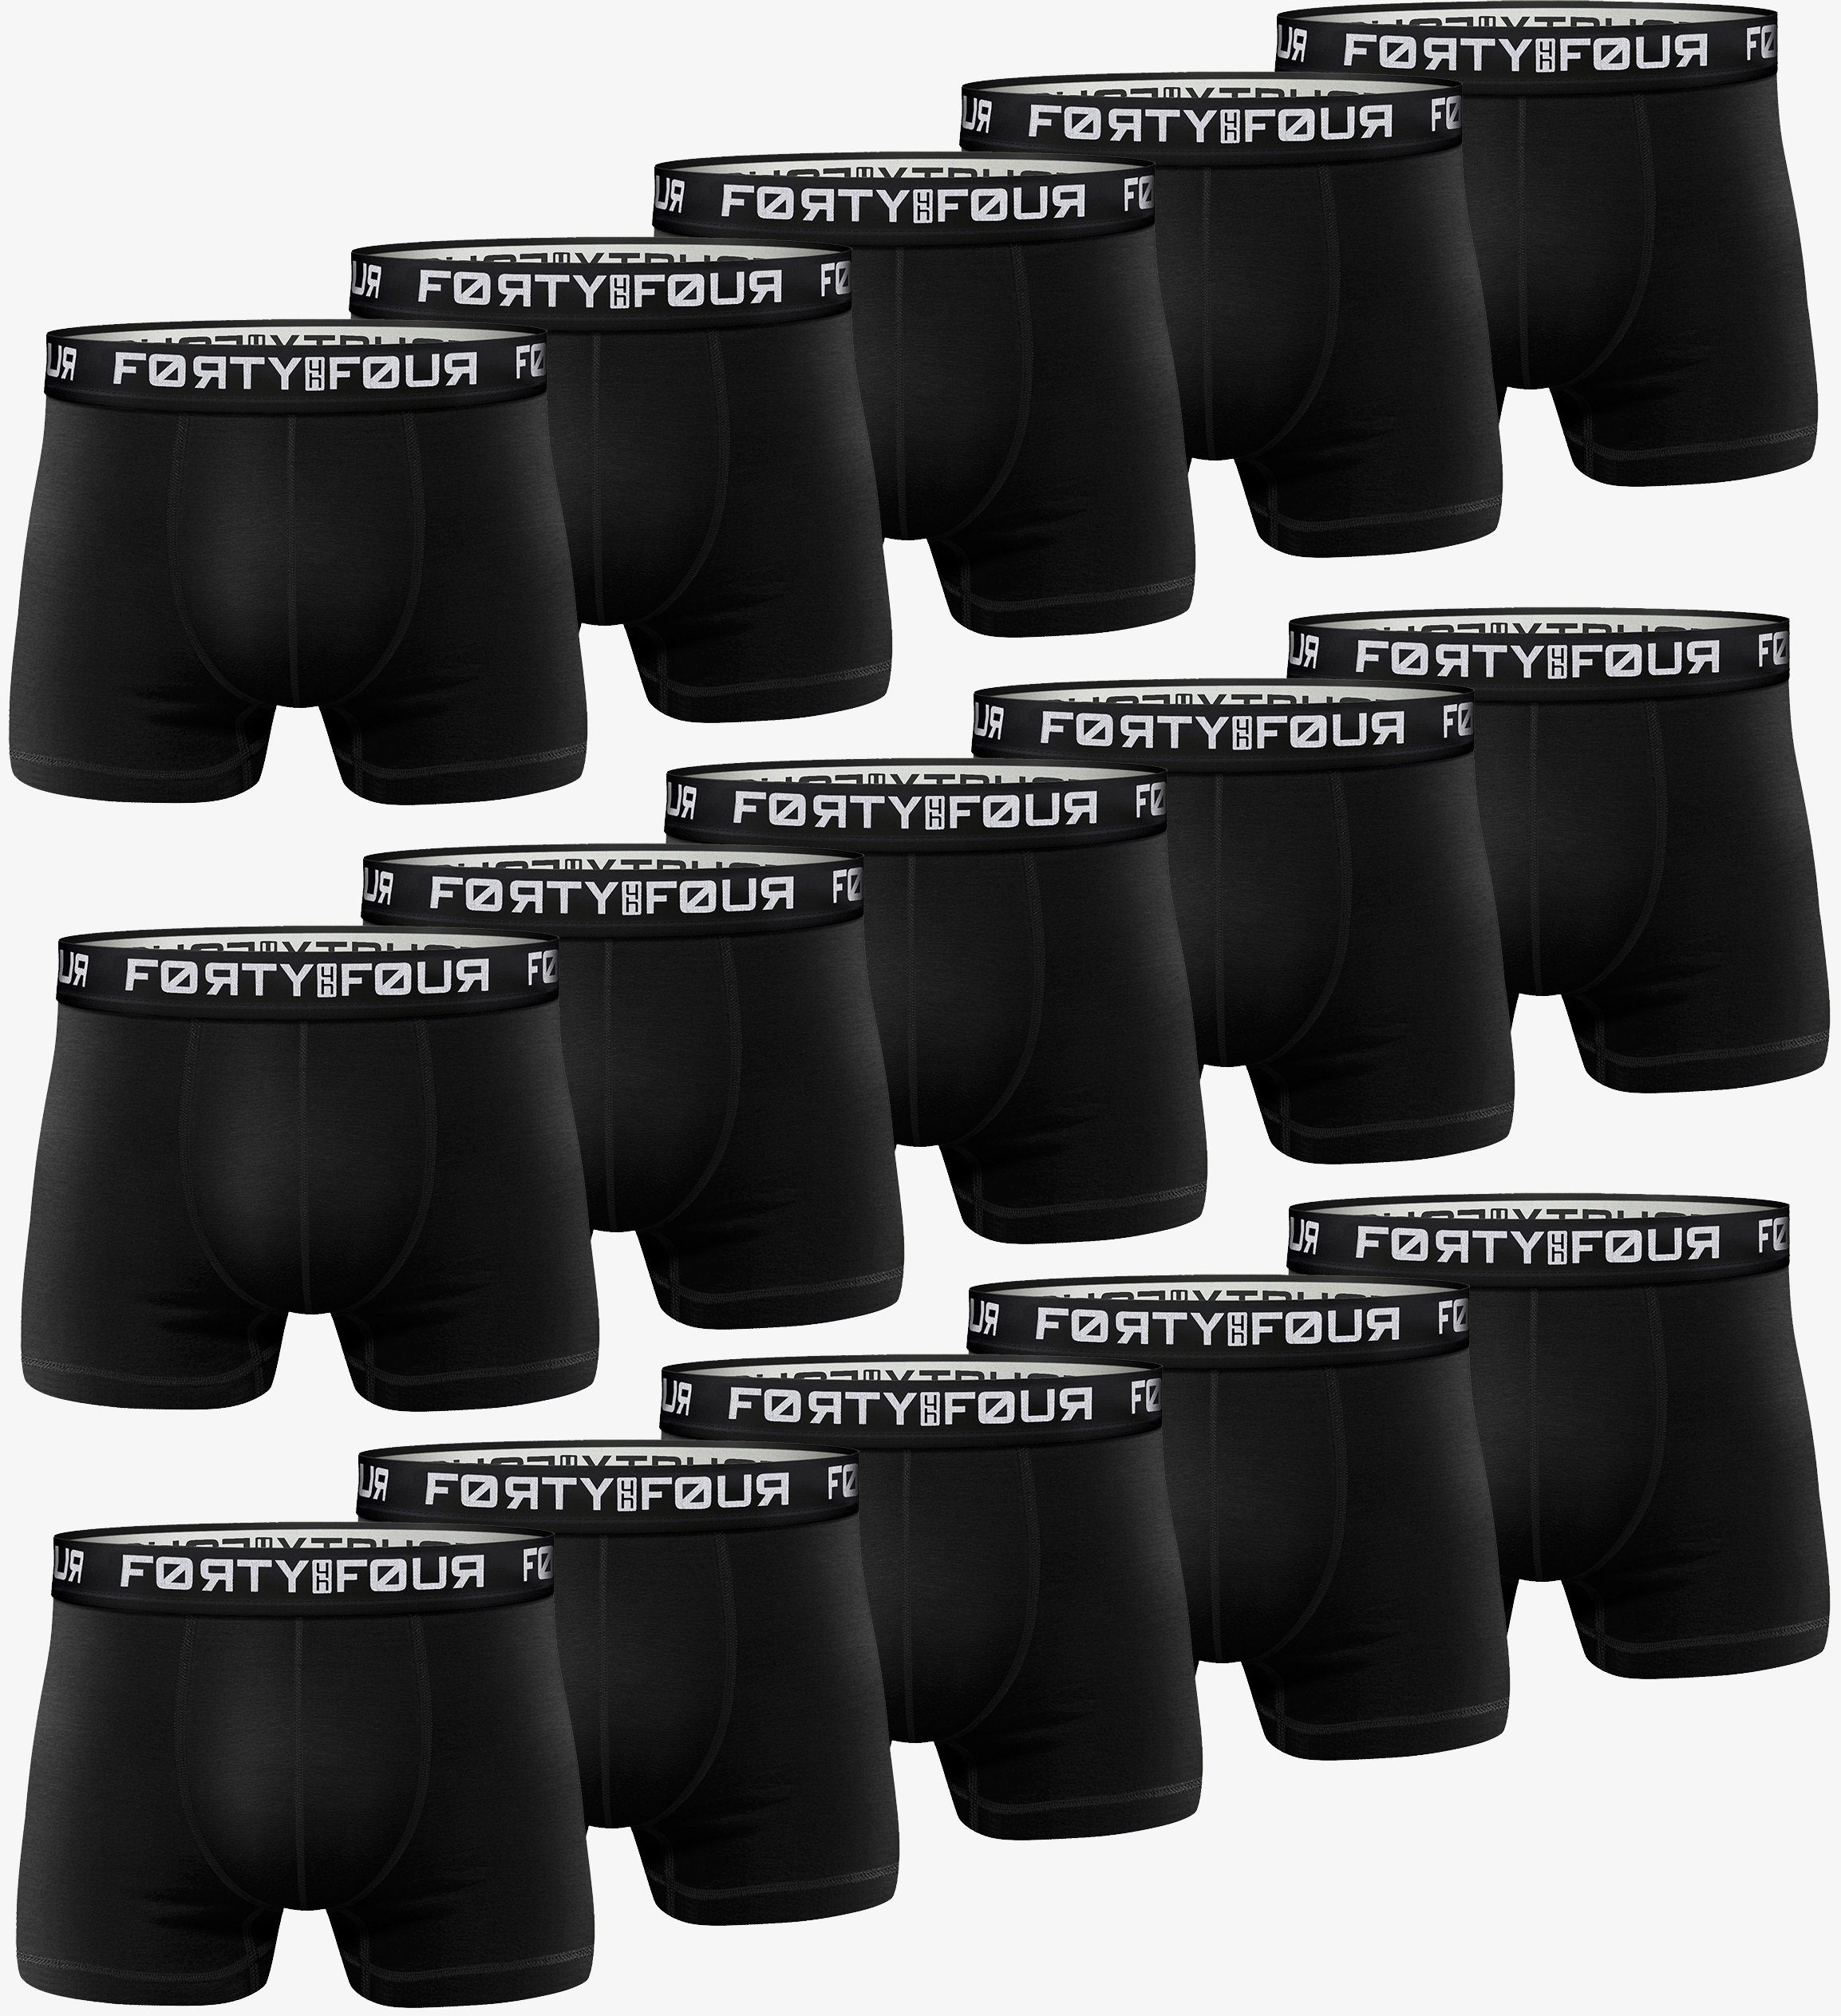 FortyFour Boxershorts Herren Männer Unterhosen Baumwolle Premium Qualität perfekte Passform (15er Pack, 15er Pack) 817b-schwarz